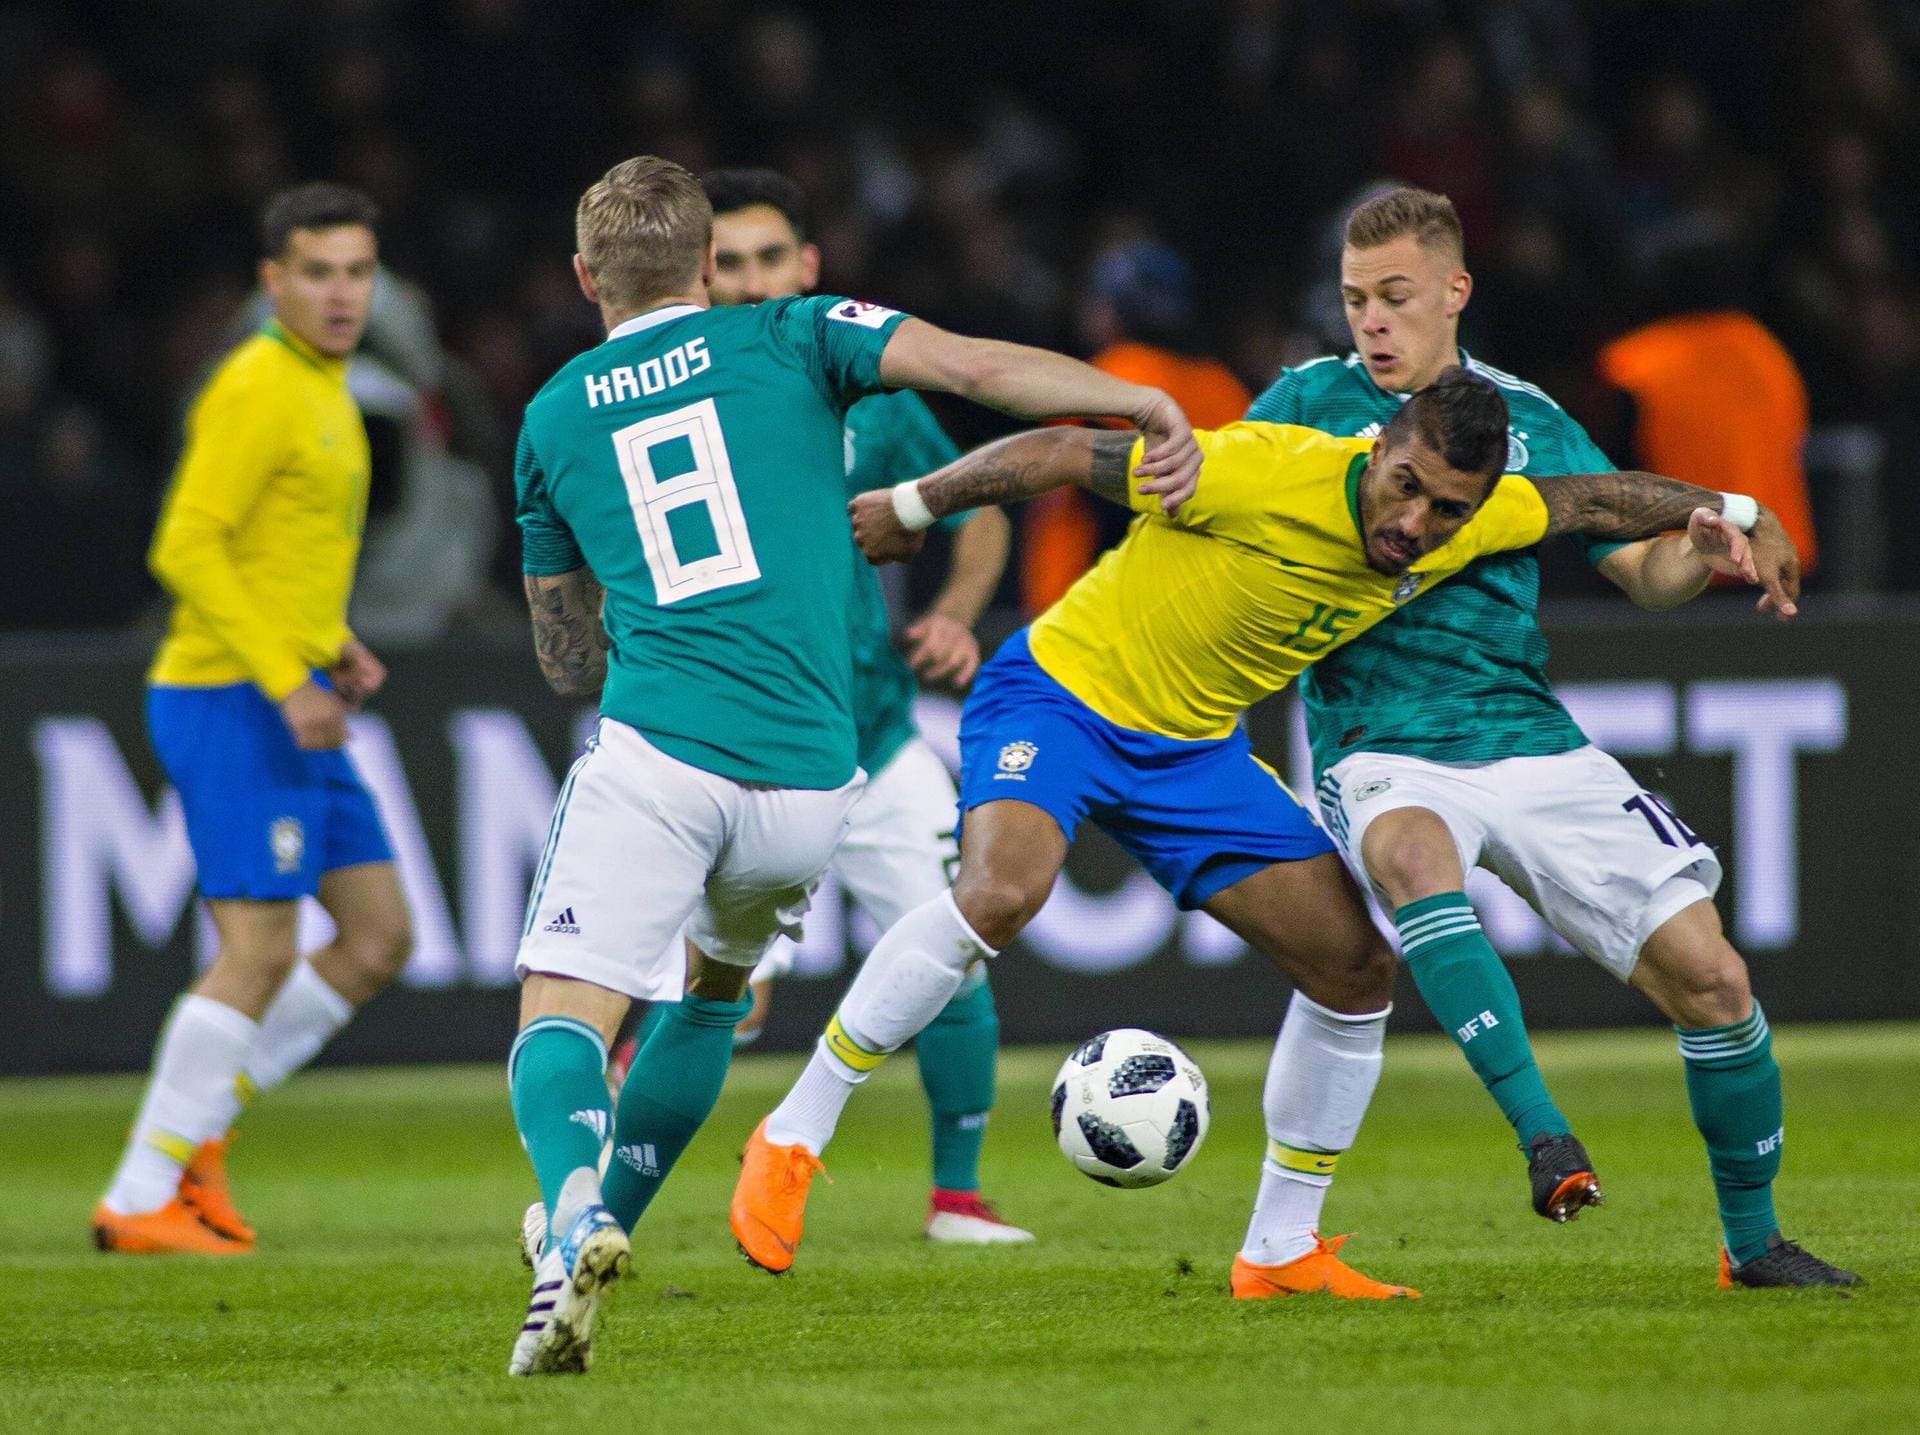 Nach dem bitteren EM-Aus folgte eine lange Phase ohne Niederlage, die das DFB-Team in falscher Sicherheit wog. Im März 2018 gab es im Test gegen Brasilien ein 0:1. Der Startschuss in ein Jahr zum Vergessen.